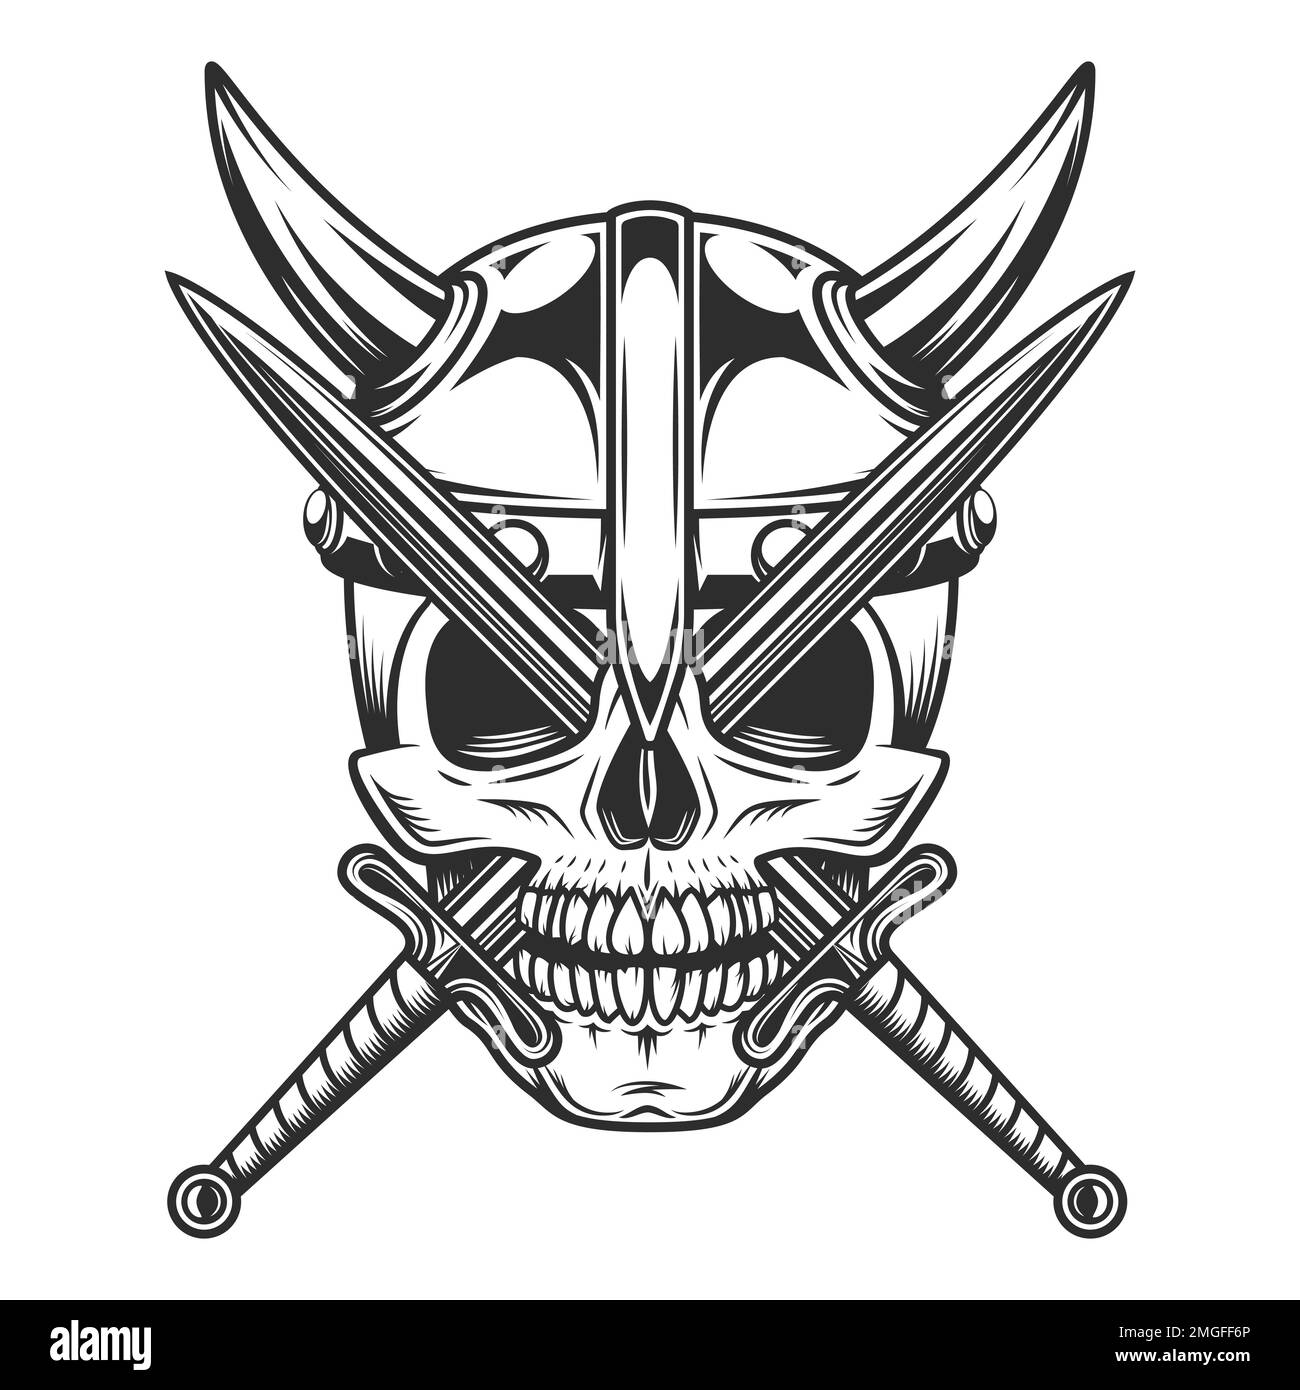 Wikinger-Emblem im Vintage-Stil mit Schädel, ernster mittelalterlicher nordischer Krieger in Hörnerhelm und isolierter Illustration des Kampfschwertes Stockfoto